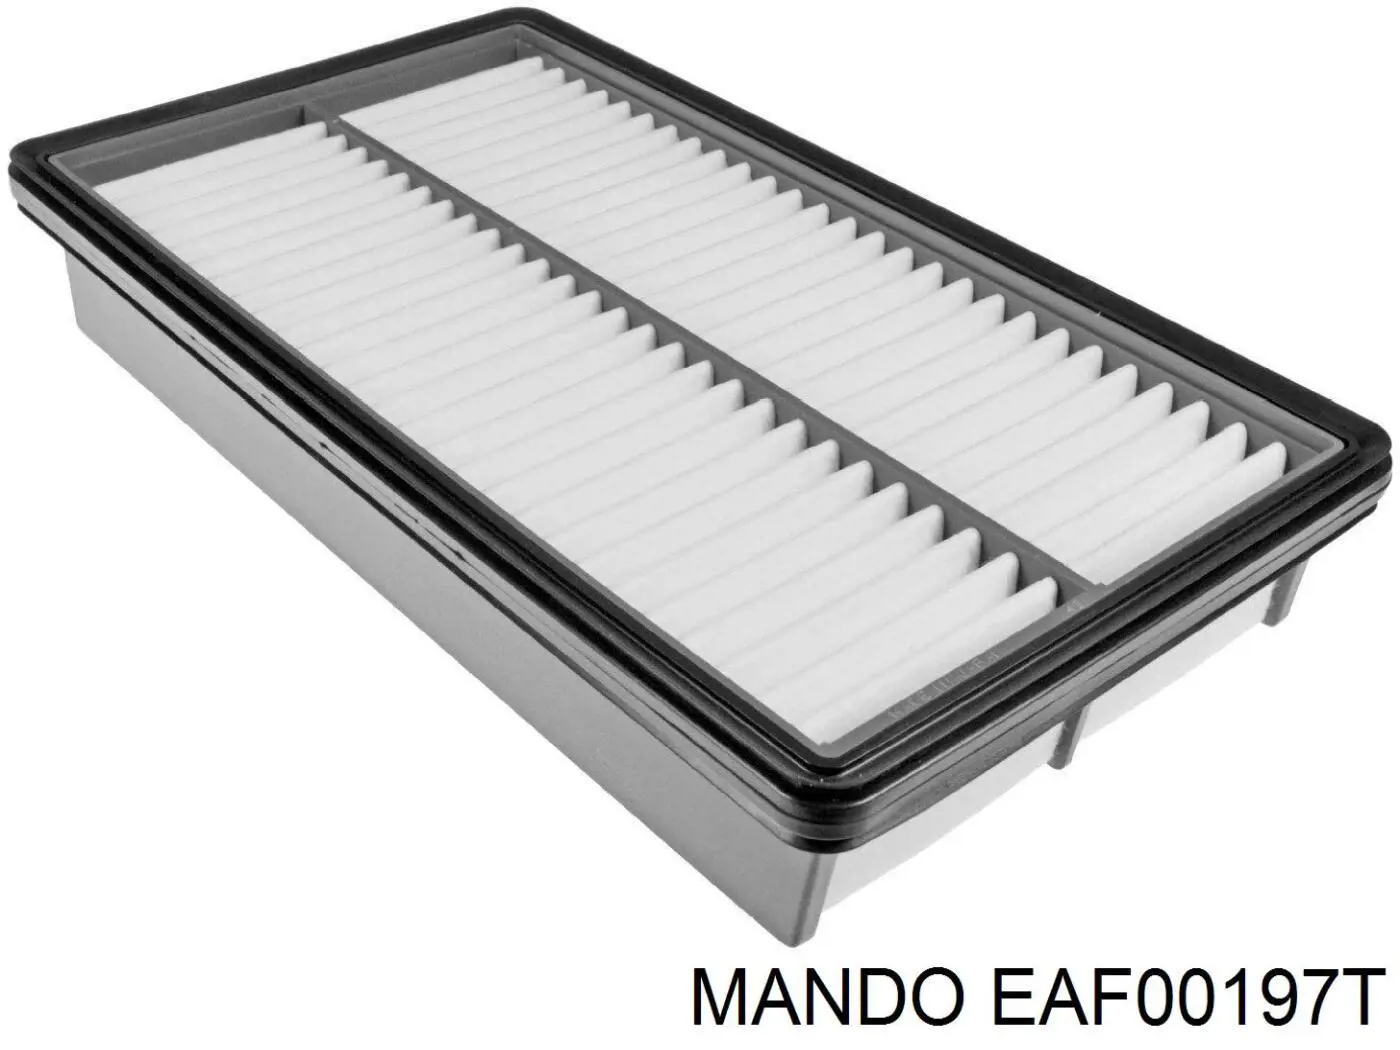 EAF00197T Mando фільтр повітряний